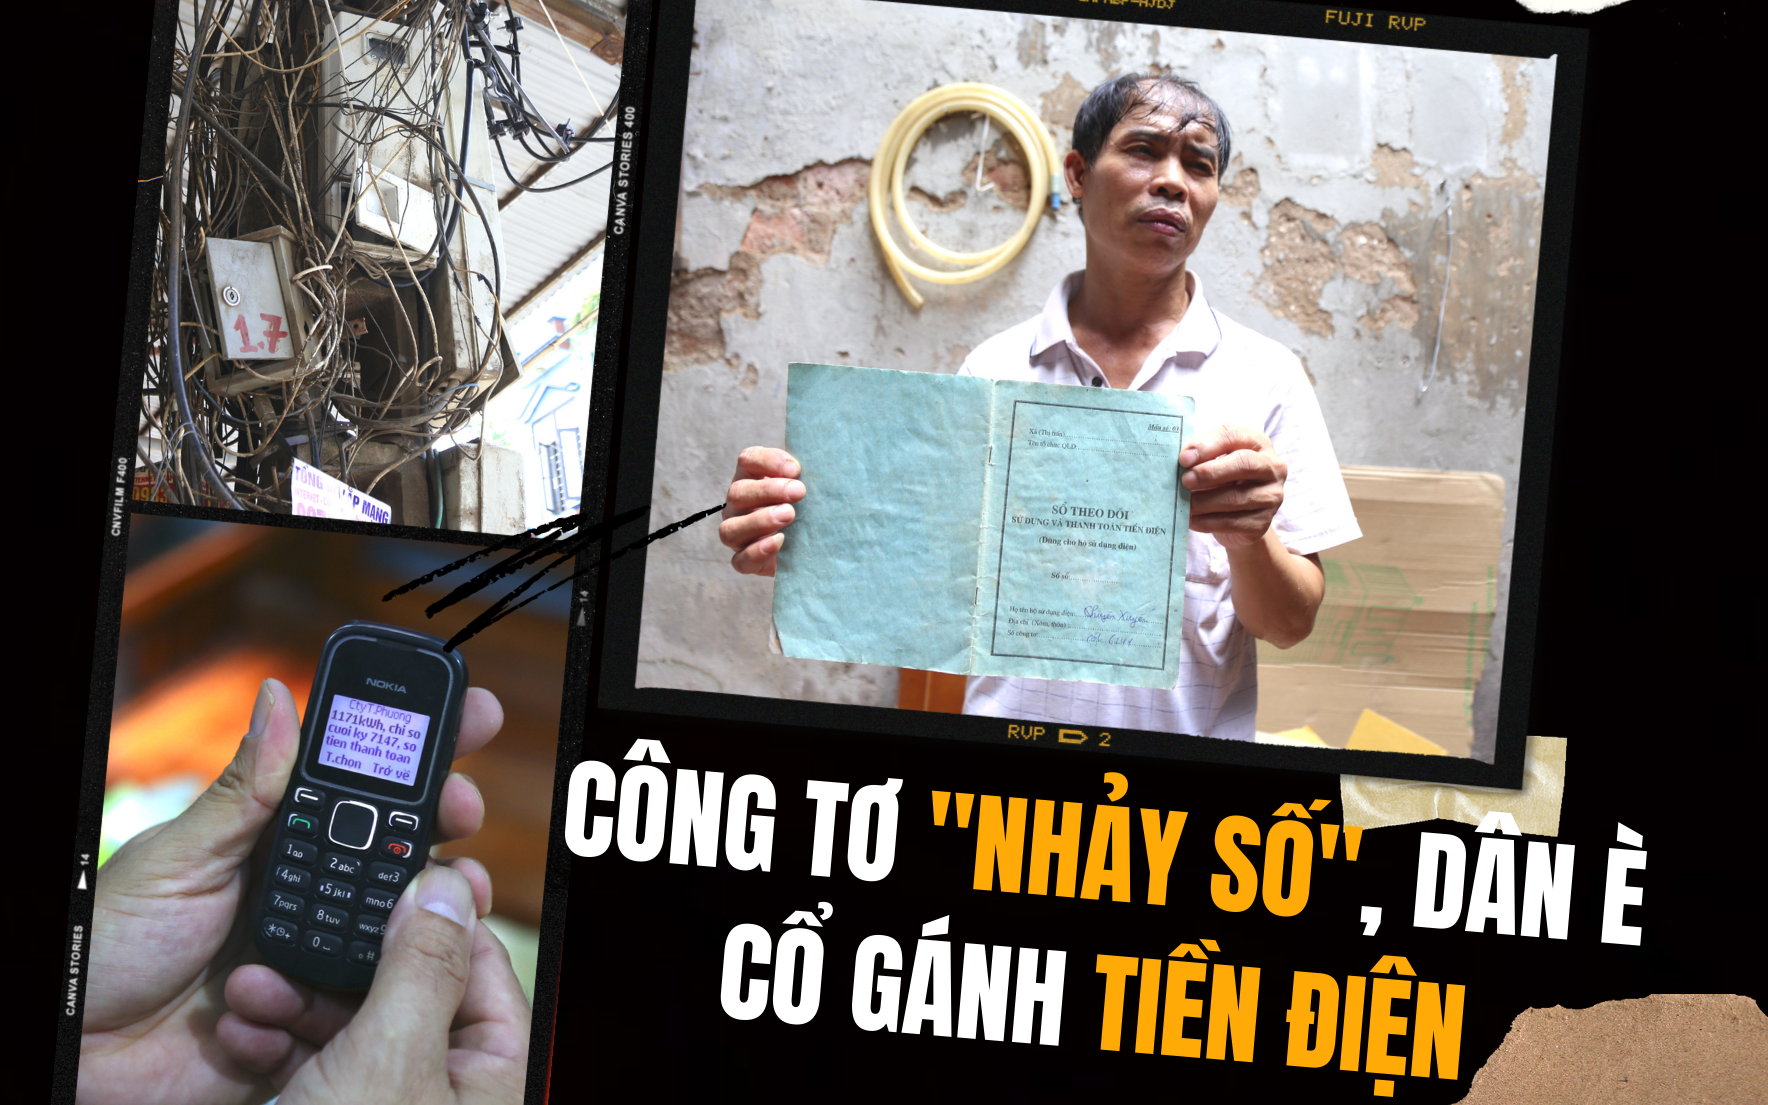 Nghịch lý tiền điện ở Hà Nội: Công tơ điện chạy như có “ma làm”, dân è cổ gánh tiền điện vô lý!